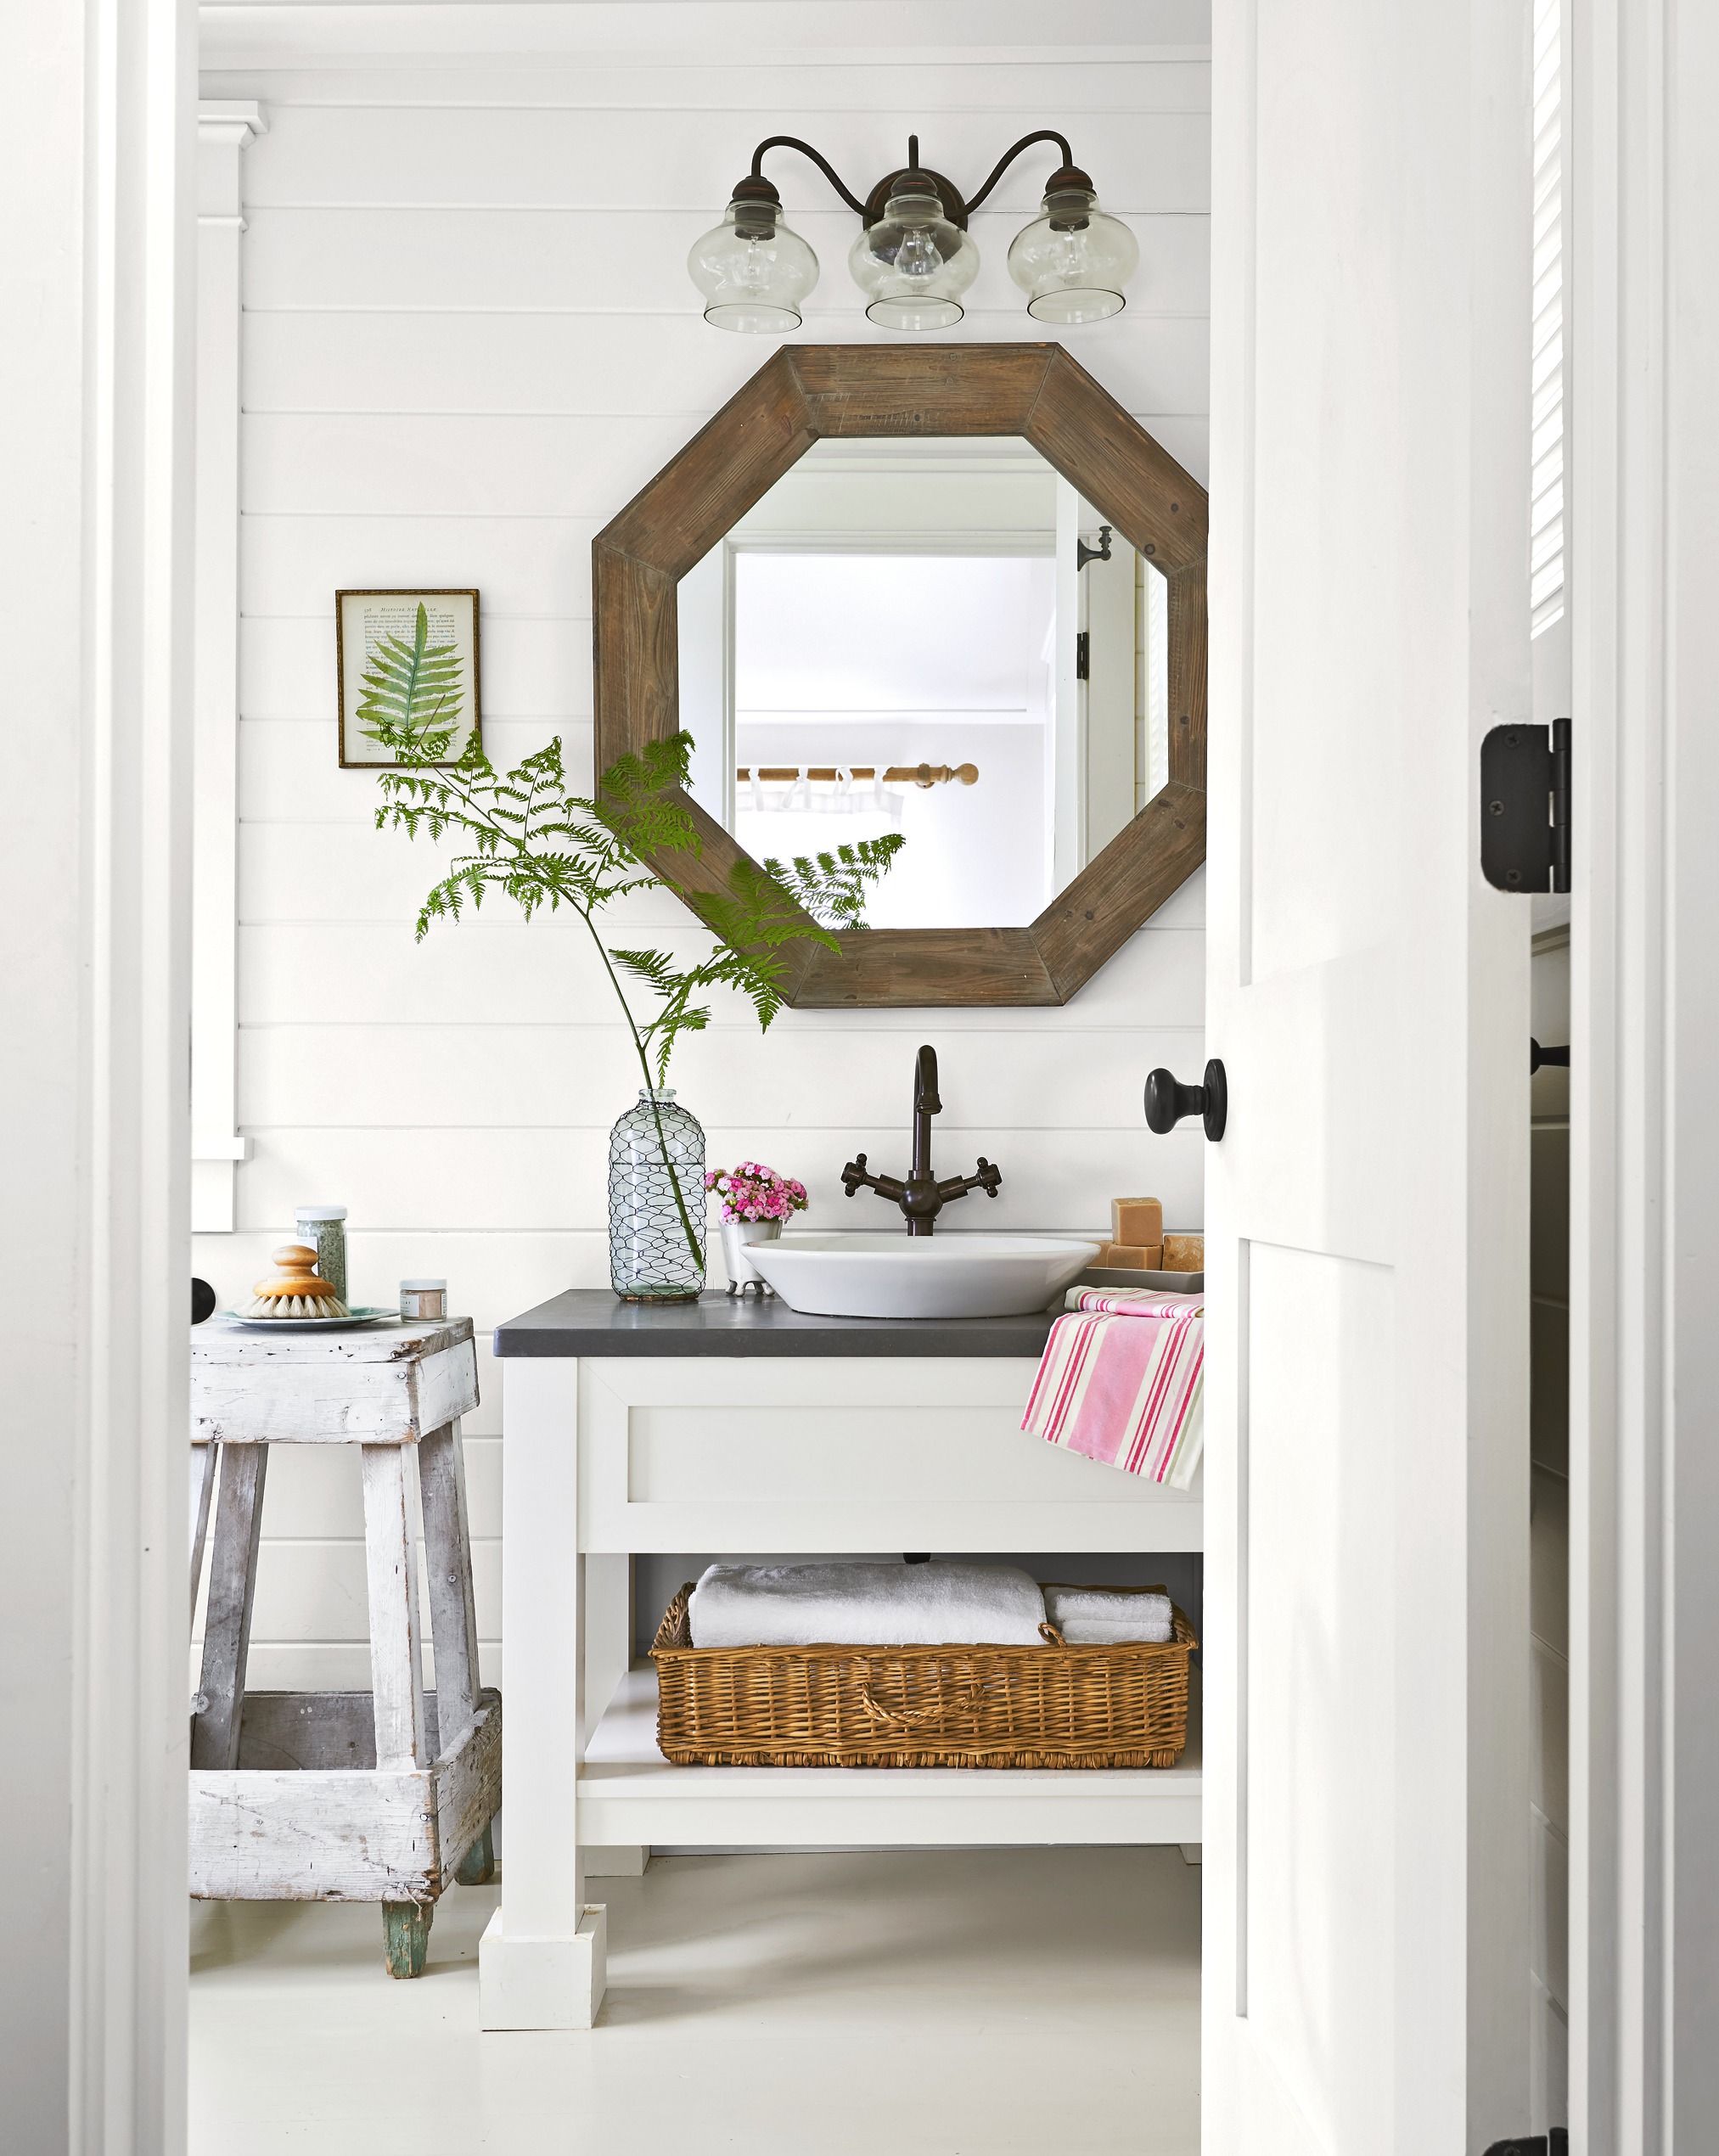 20 Half Bathroom Ideas - Decor Ideas for Small Spaces